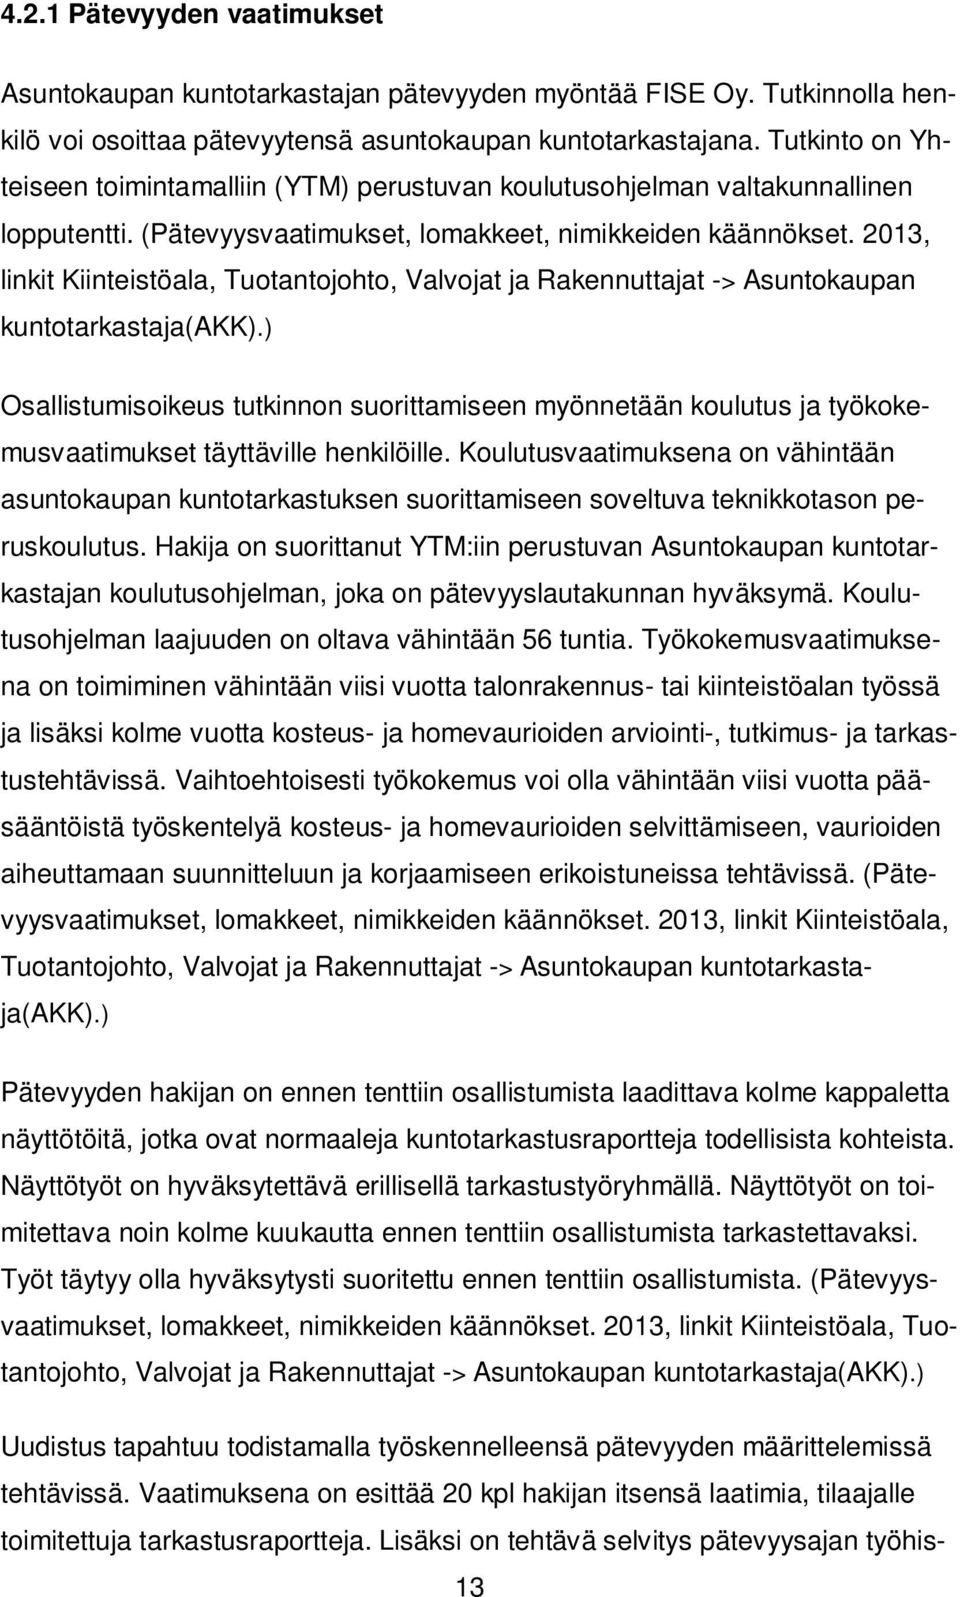 2013, linkit Kiintstöala, Tuotantojohto, Valvojat ja Rakennuttajat -> Asuntokaupan kuntotarkastaja(akk).